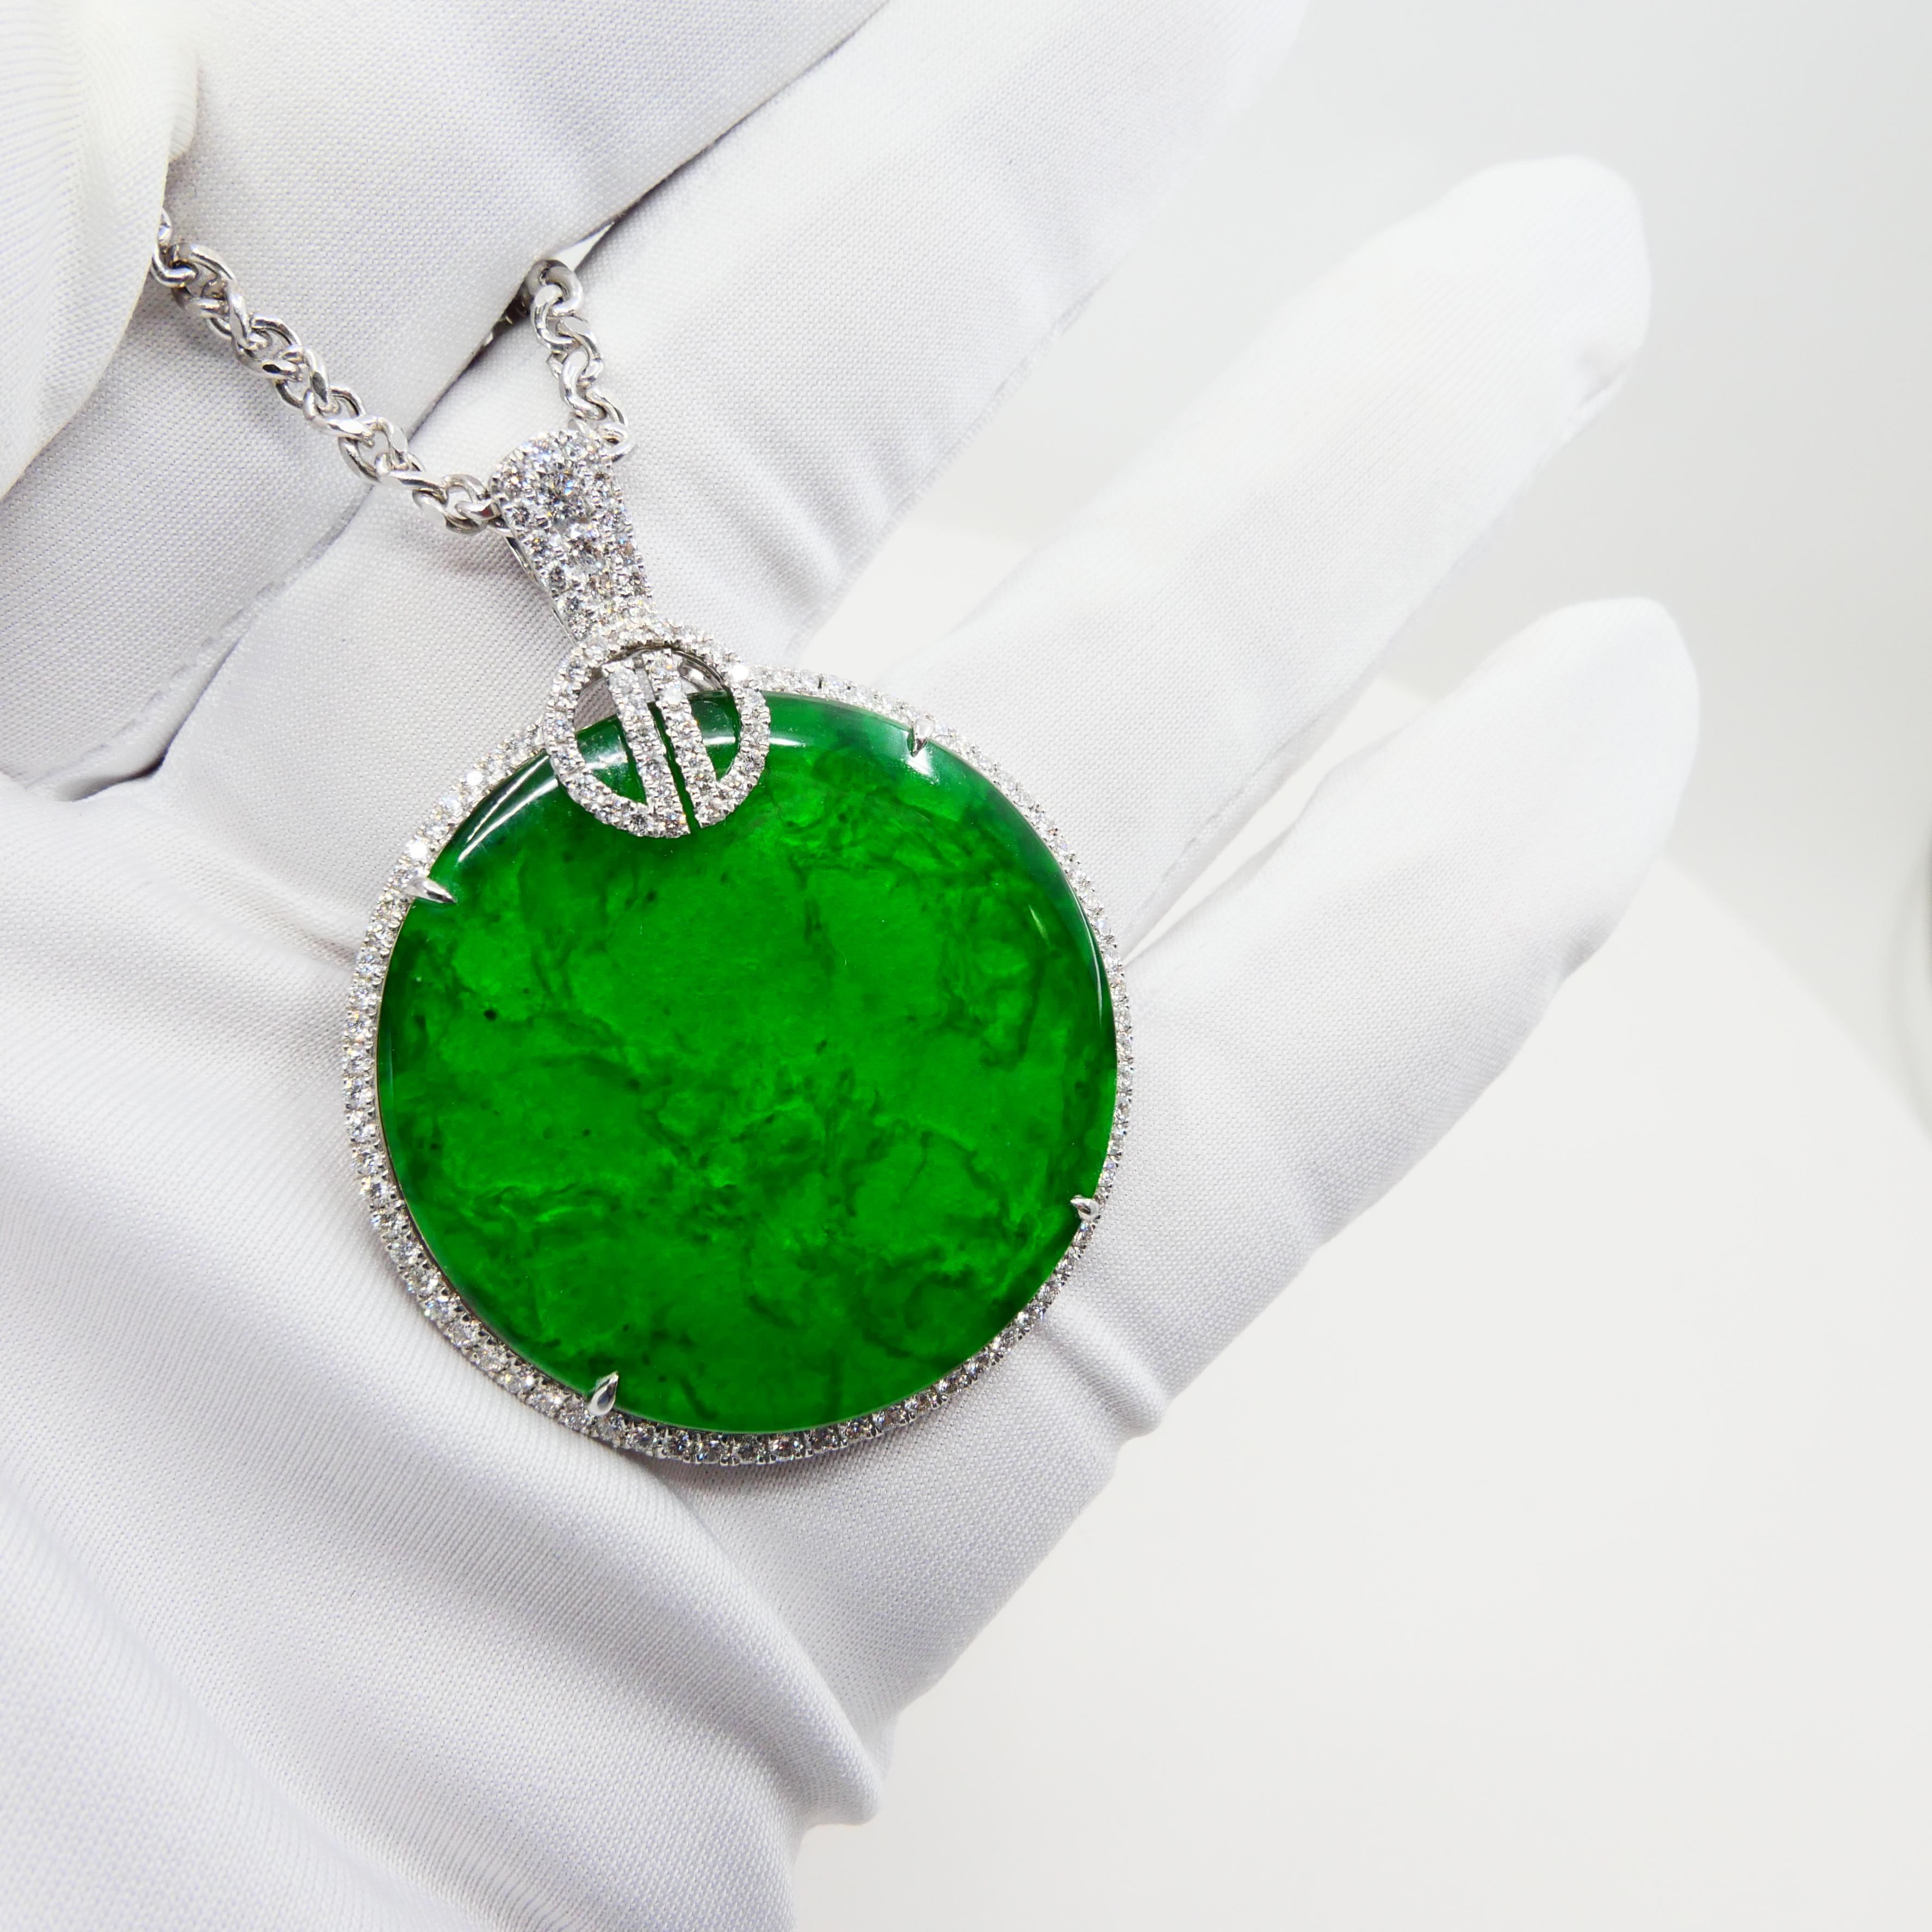 Certified Imperial & Apple Green Jadeite Jade Diamond Pendant, Sika Deer Pattern 1